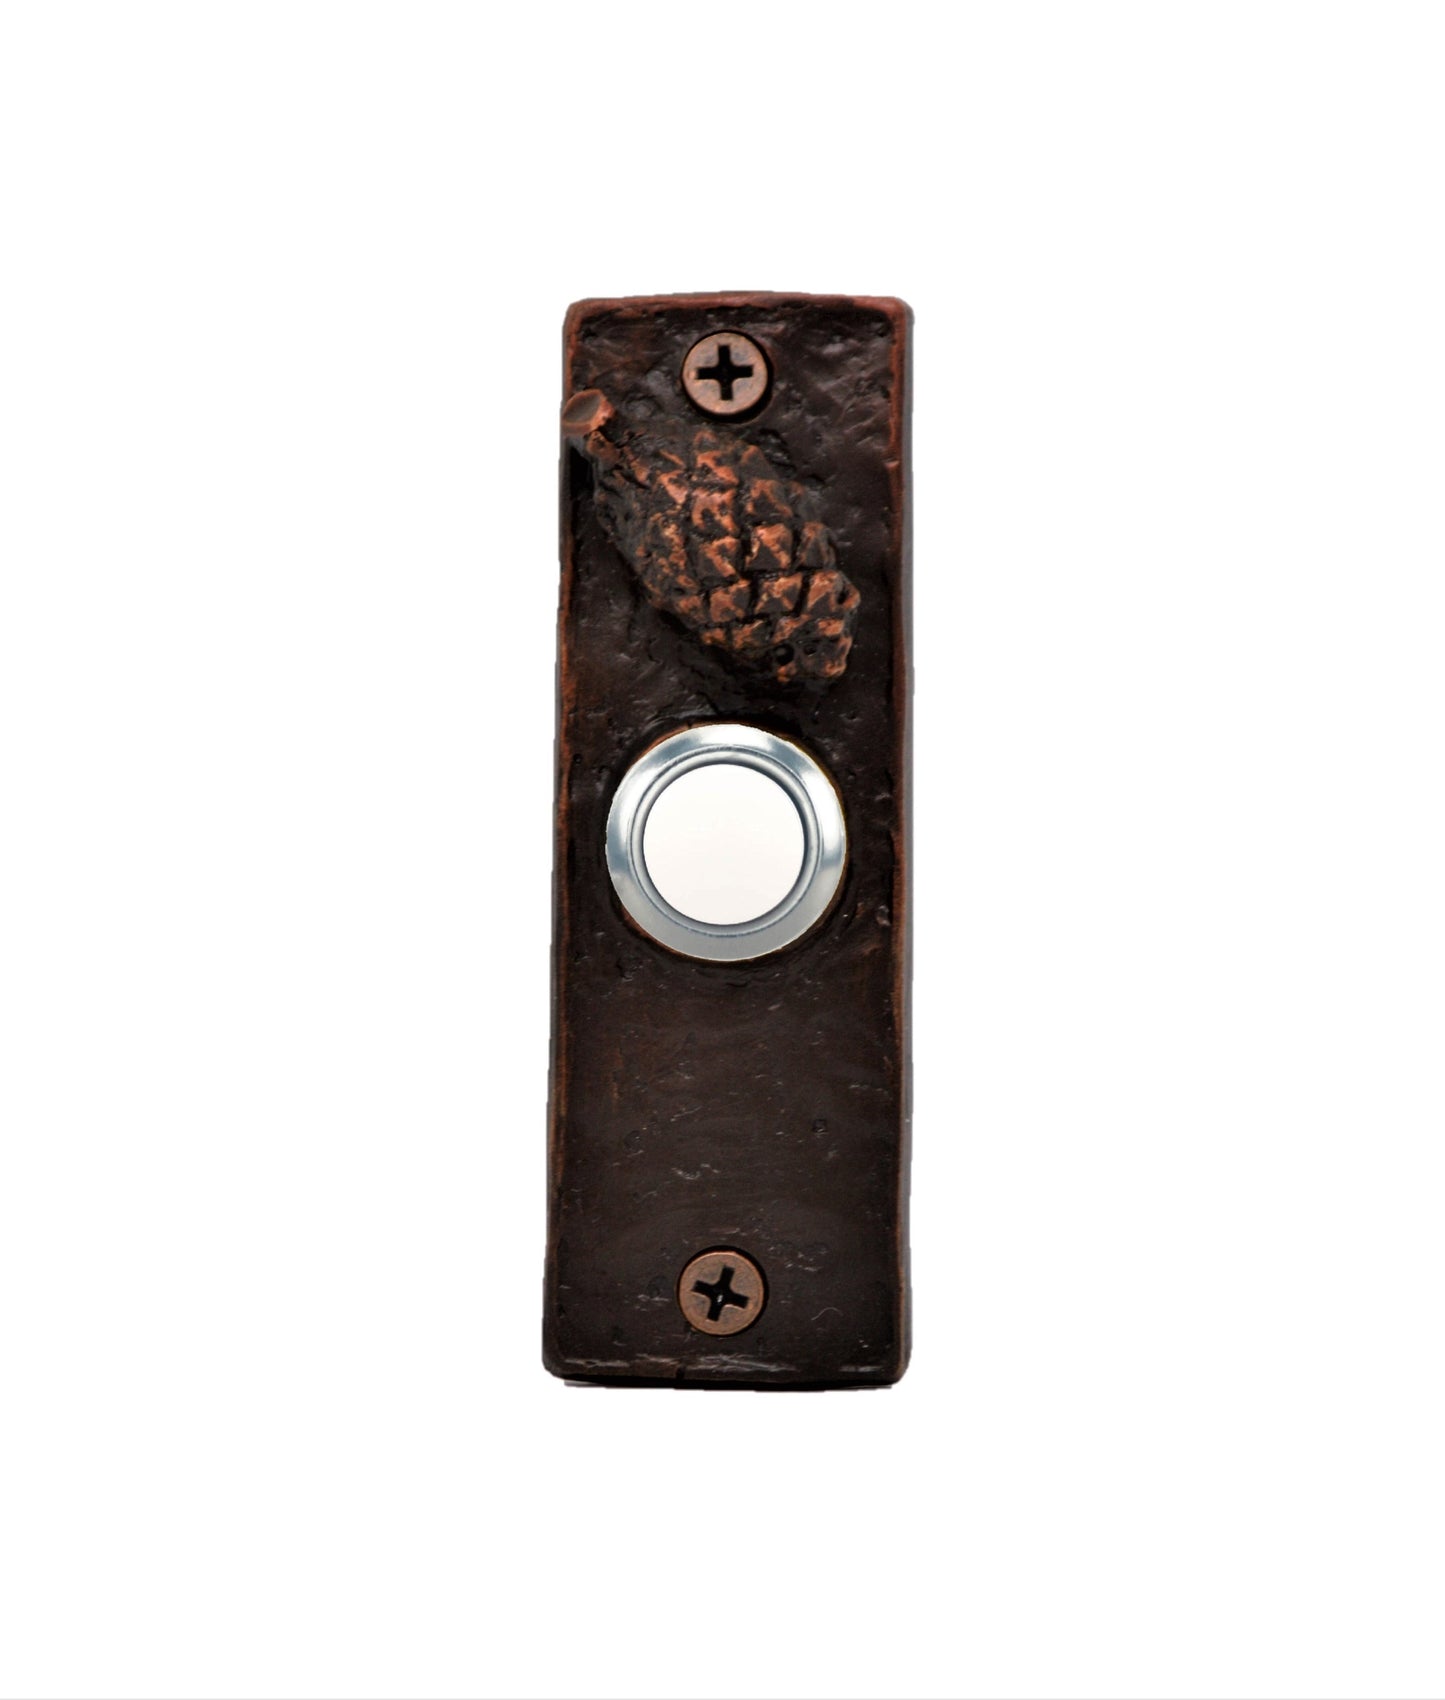 Slim bronze doorbell with Lodgepole pine cone - patina